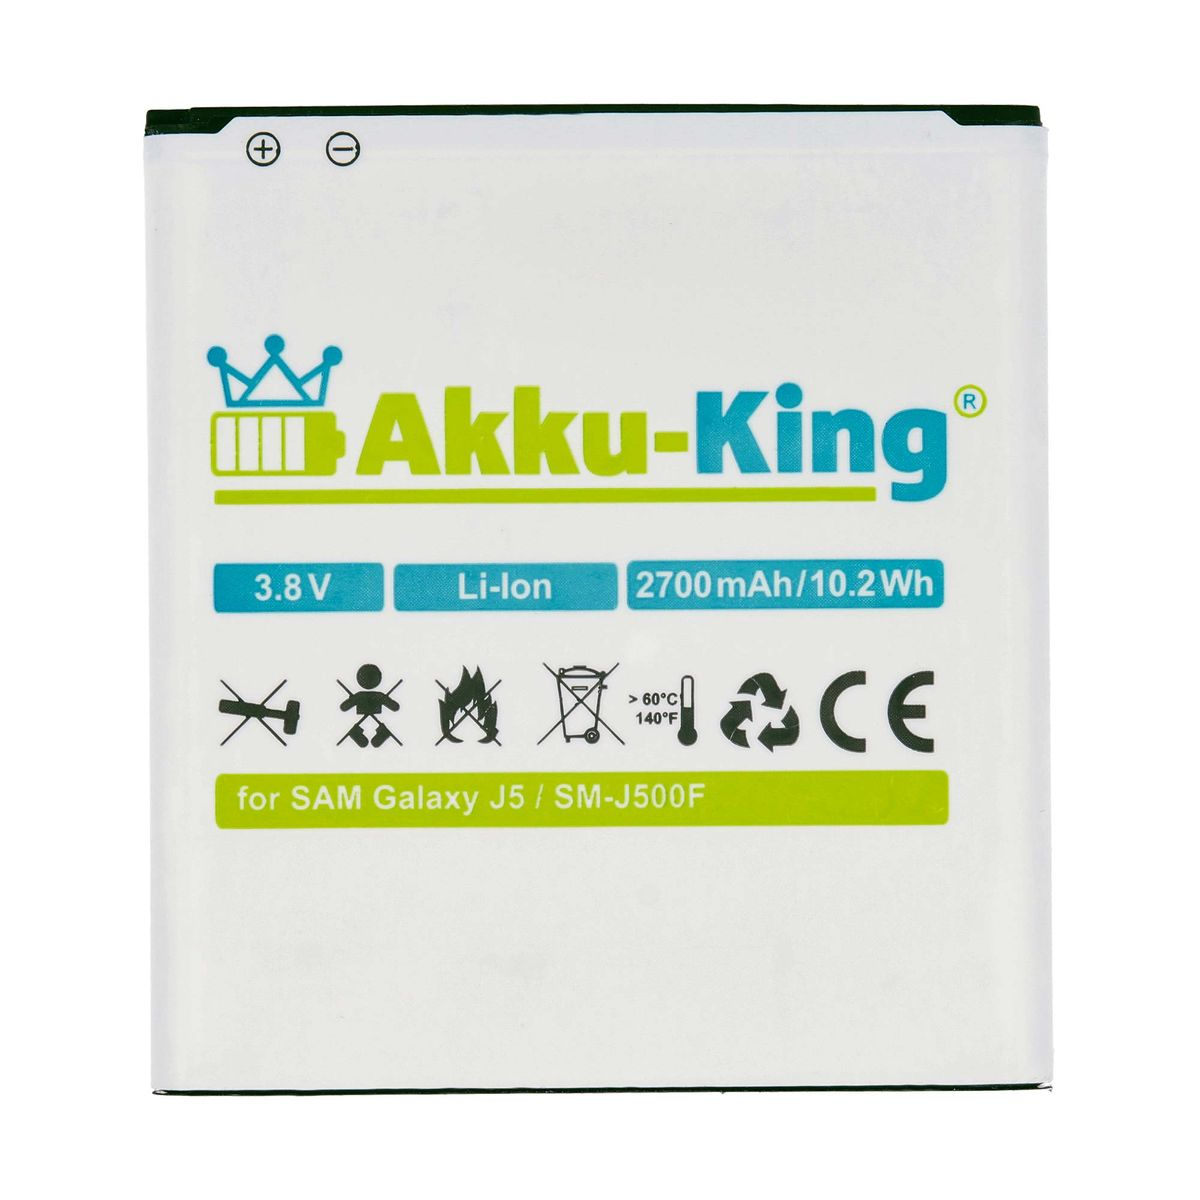 Volt, Akku kompatibel EB-BG530BBE 3.8 mit 2700mAh Li-Ion AKKU-KING Handy-Akku, Samsung